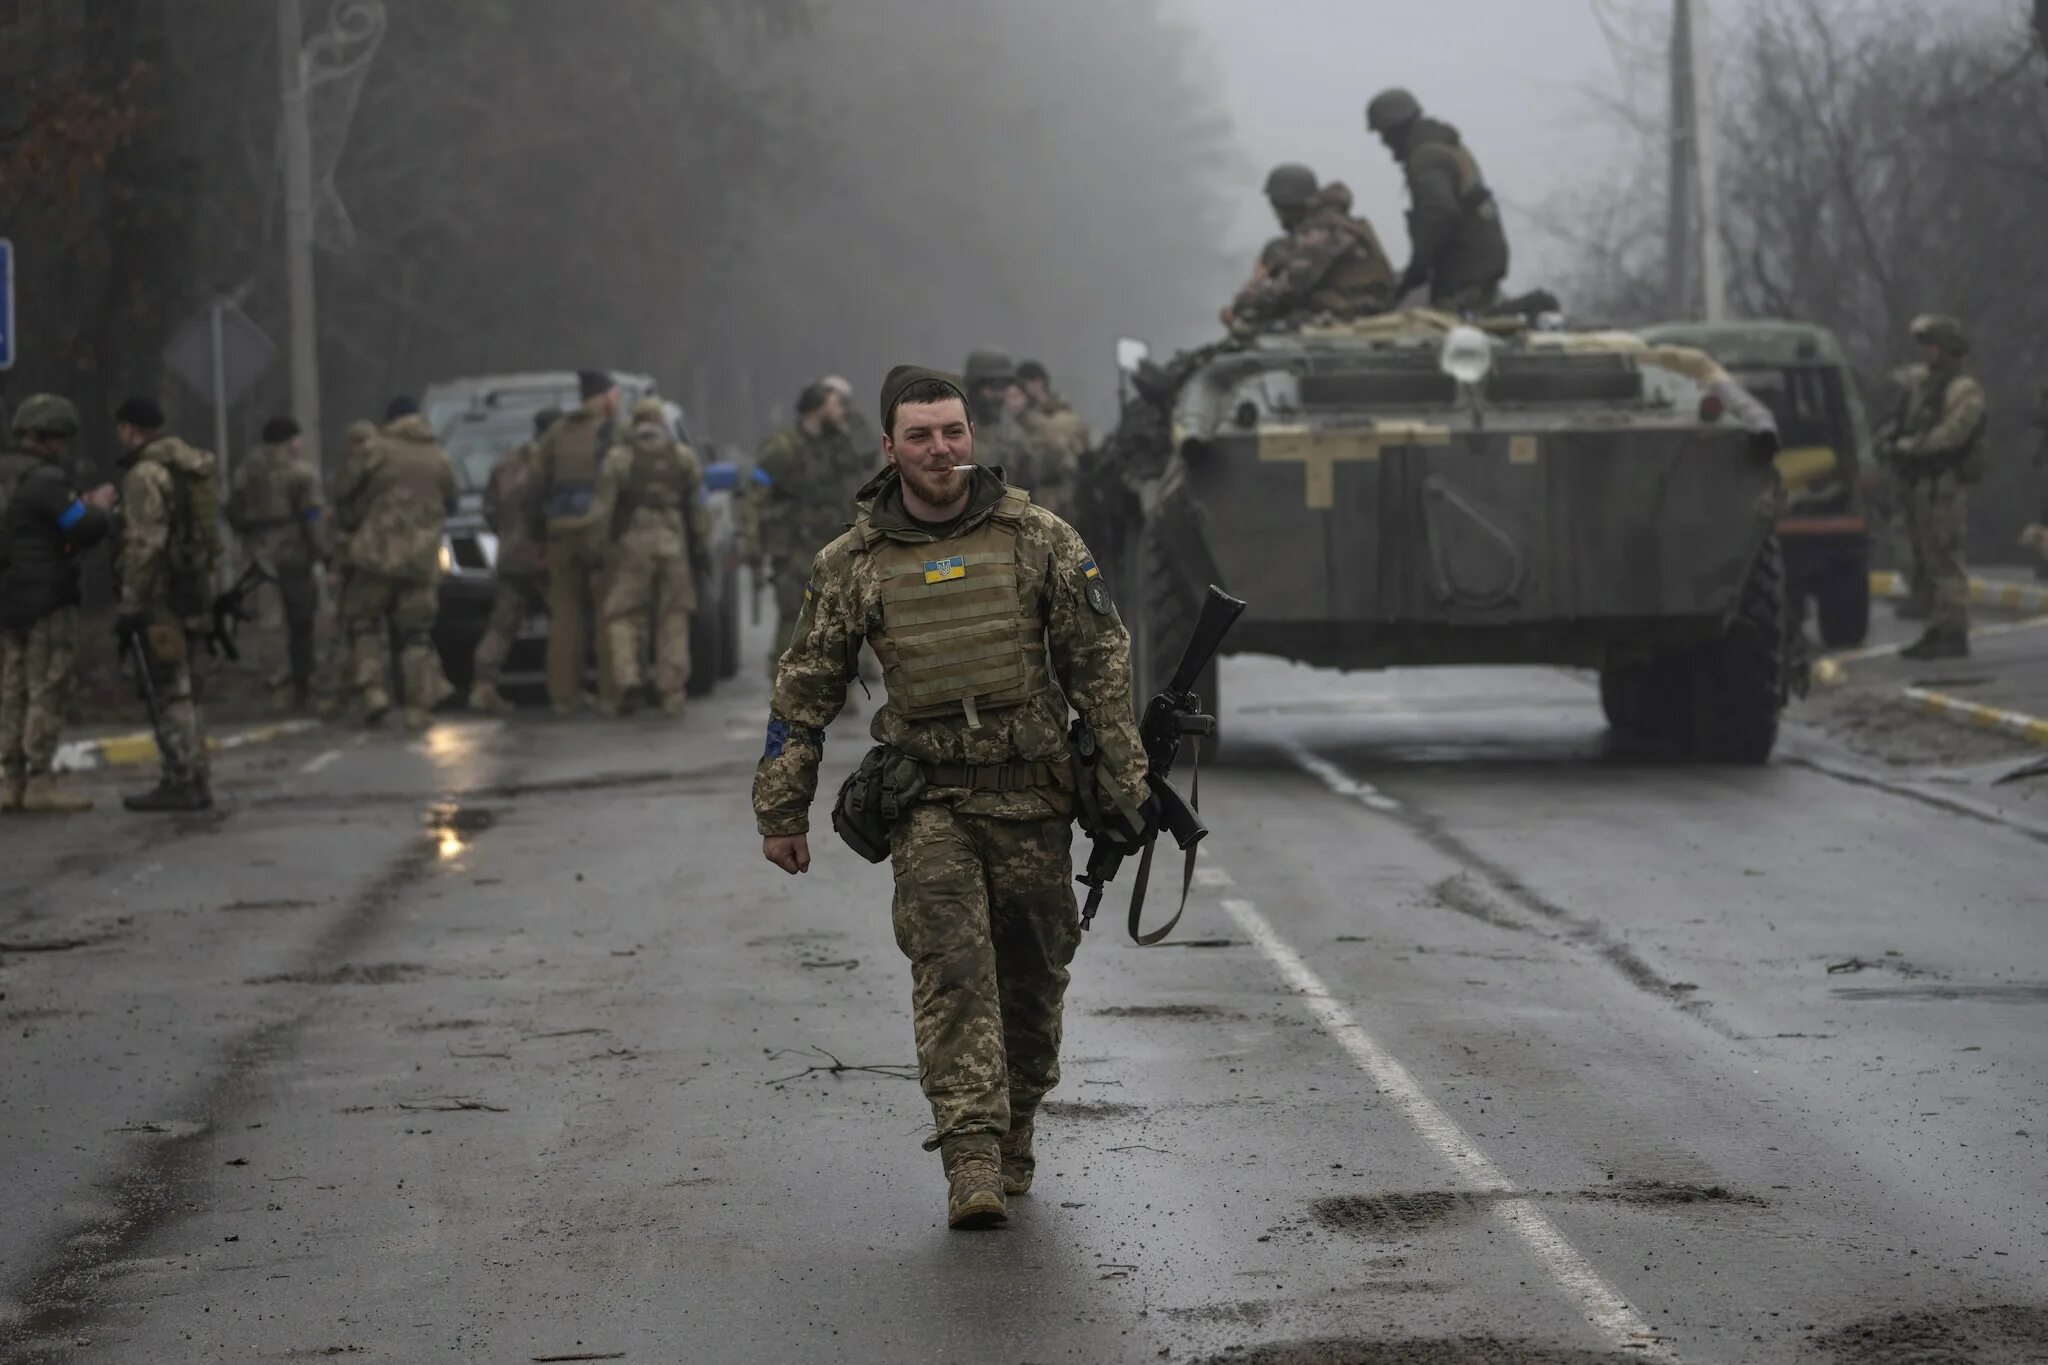 Последние новости про войну с украиной сегодня. Боевые действия. Украинские военные. Вайнаукрайна.